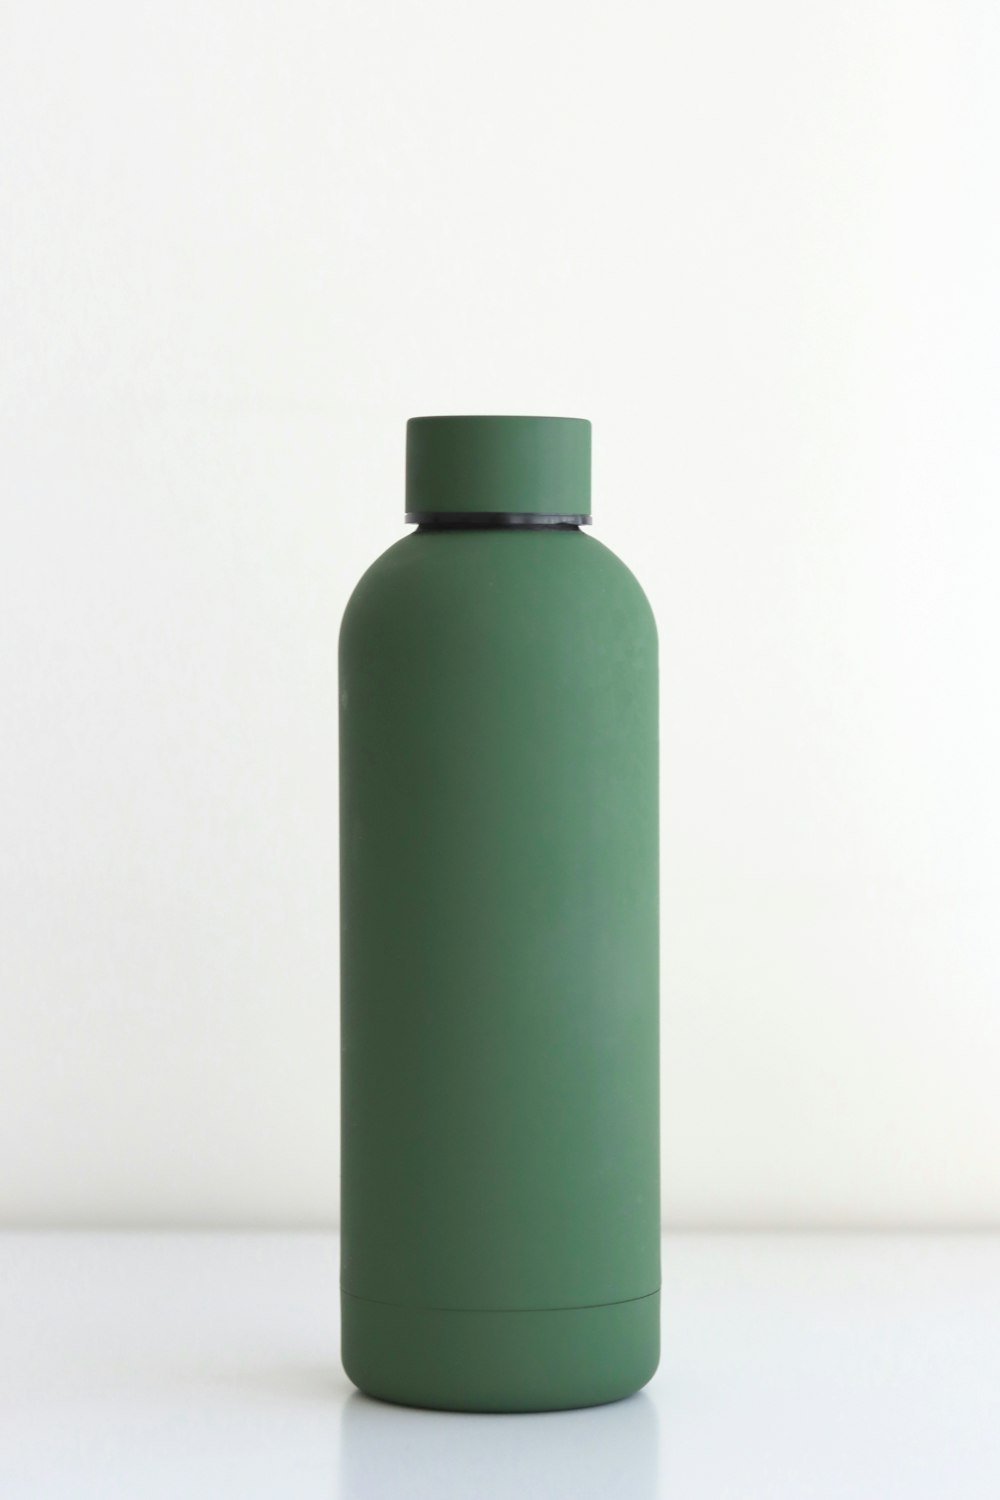 green bottle on white table